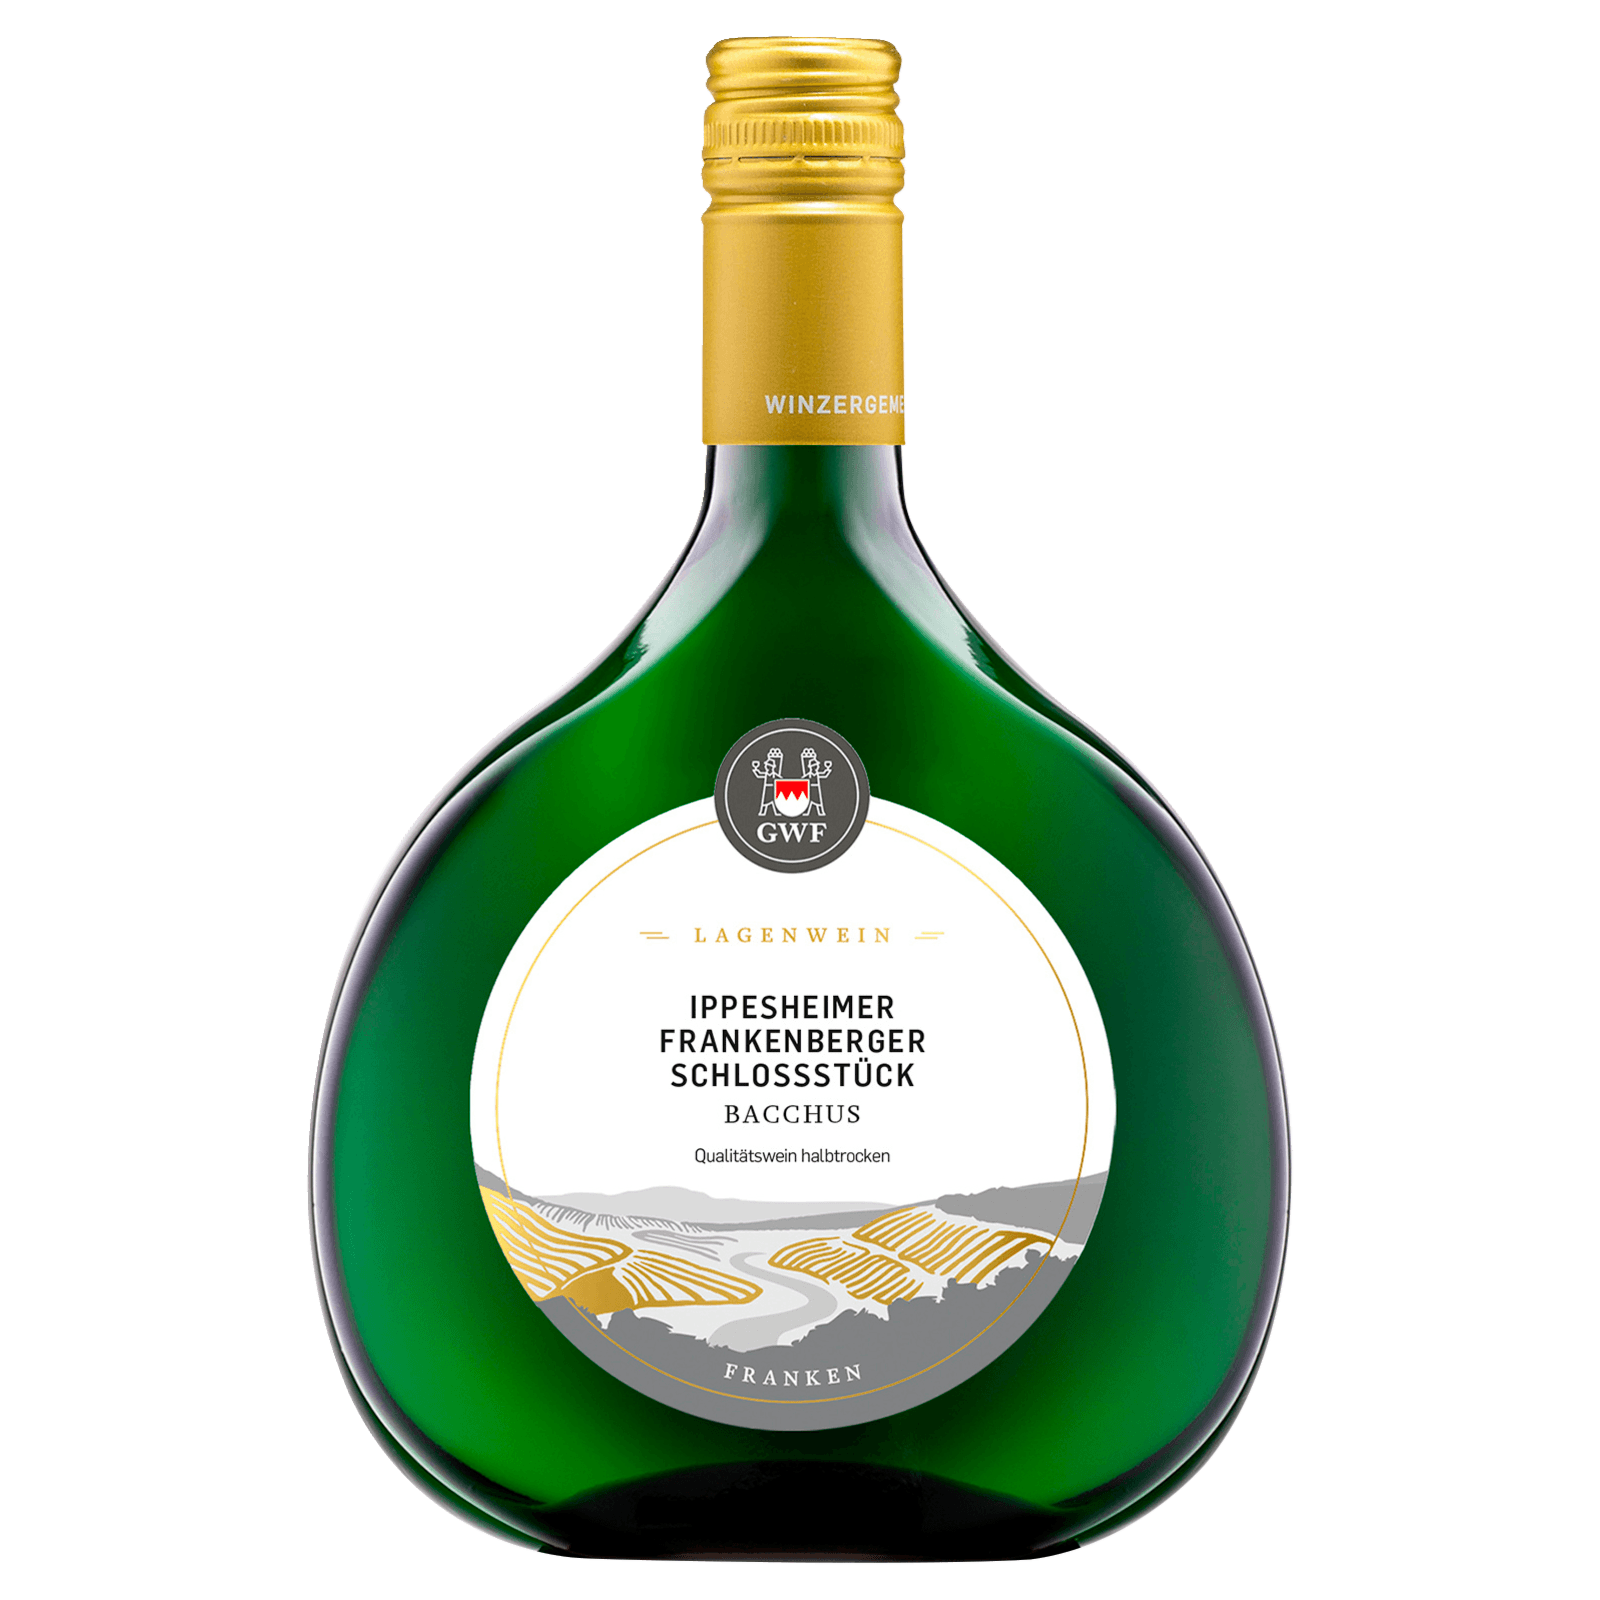 GWF Ippesheimer Frankenberger Schlossstück Weißwein Bacchus QbA halbtrocken  0,75l bei REWE online bestellen!